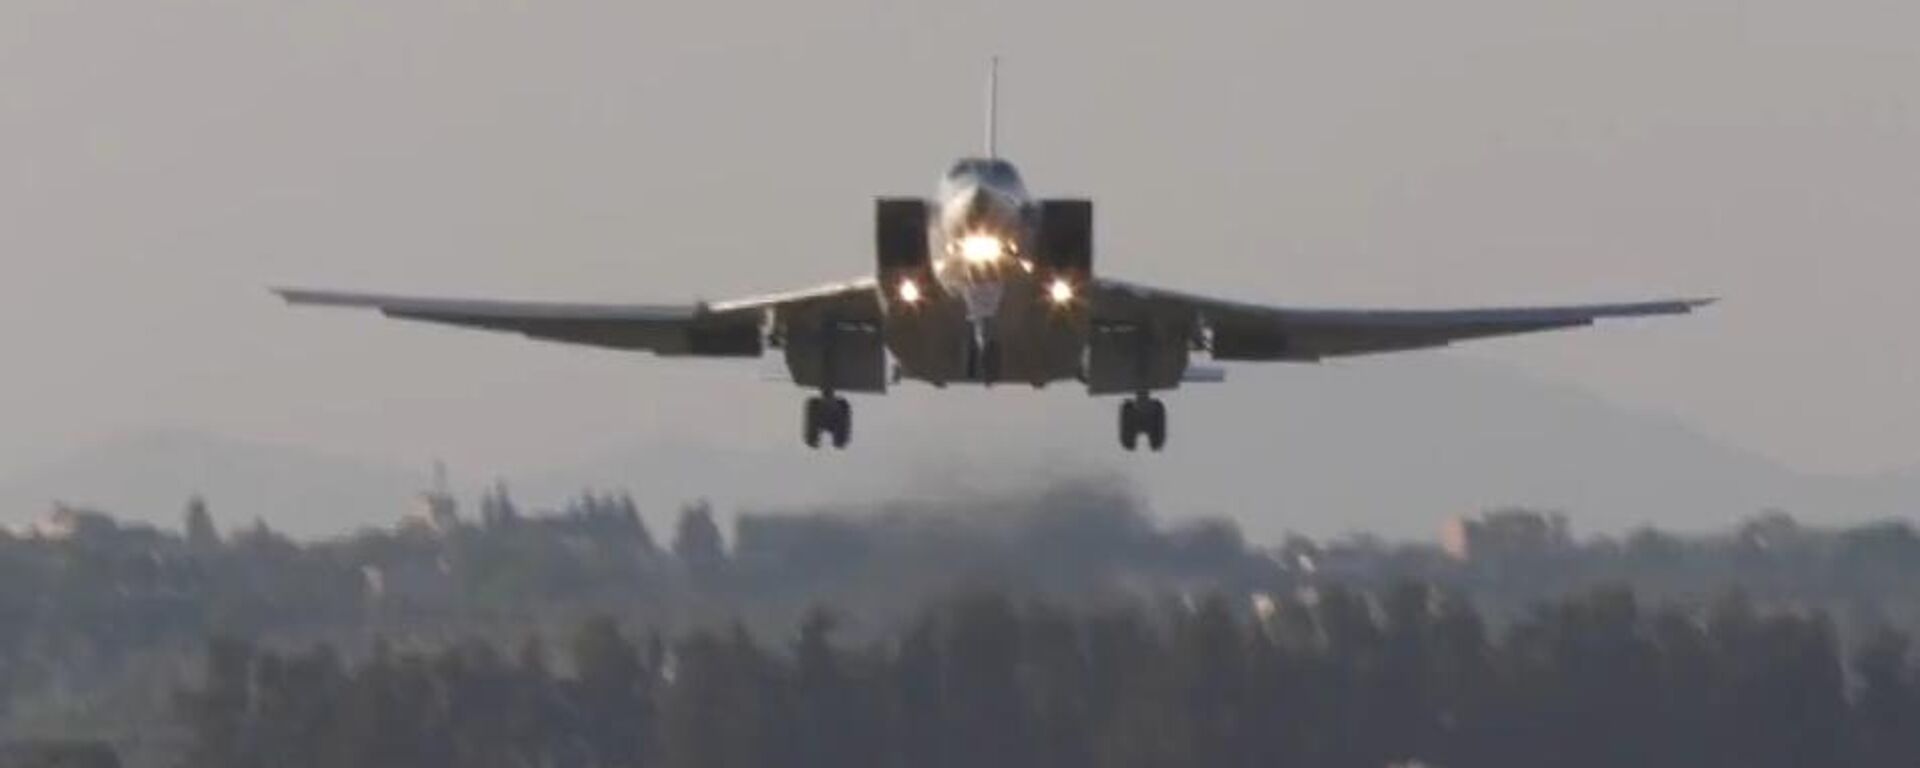 Дальние бомбардировщики Ту-22 впервые приземлились на авиабазе Хмеймим в Сирии - Sputnik Литва, 1920, 27.05.2021